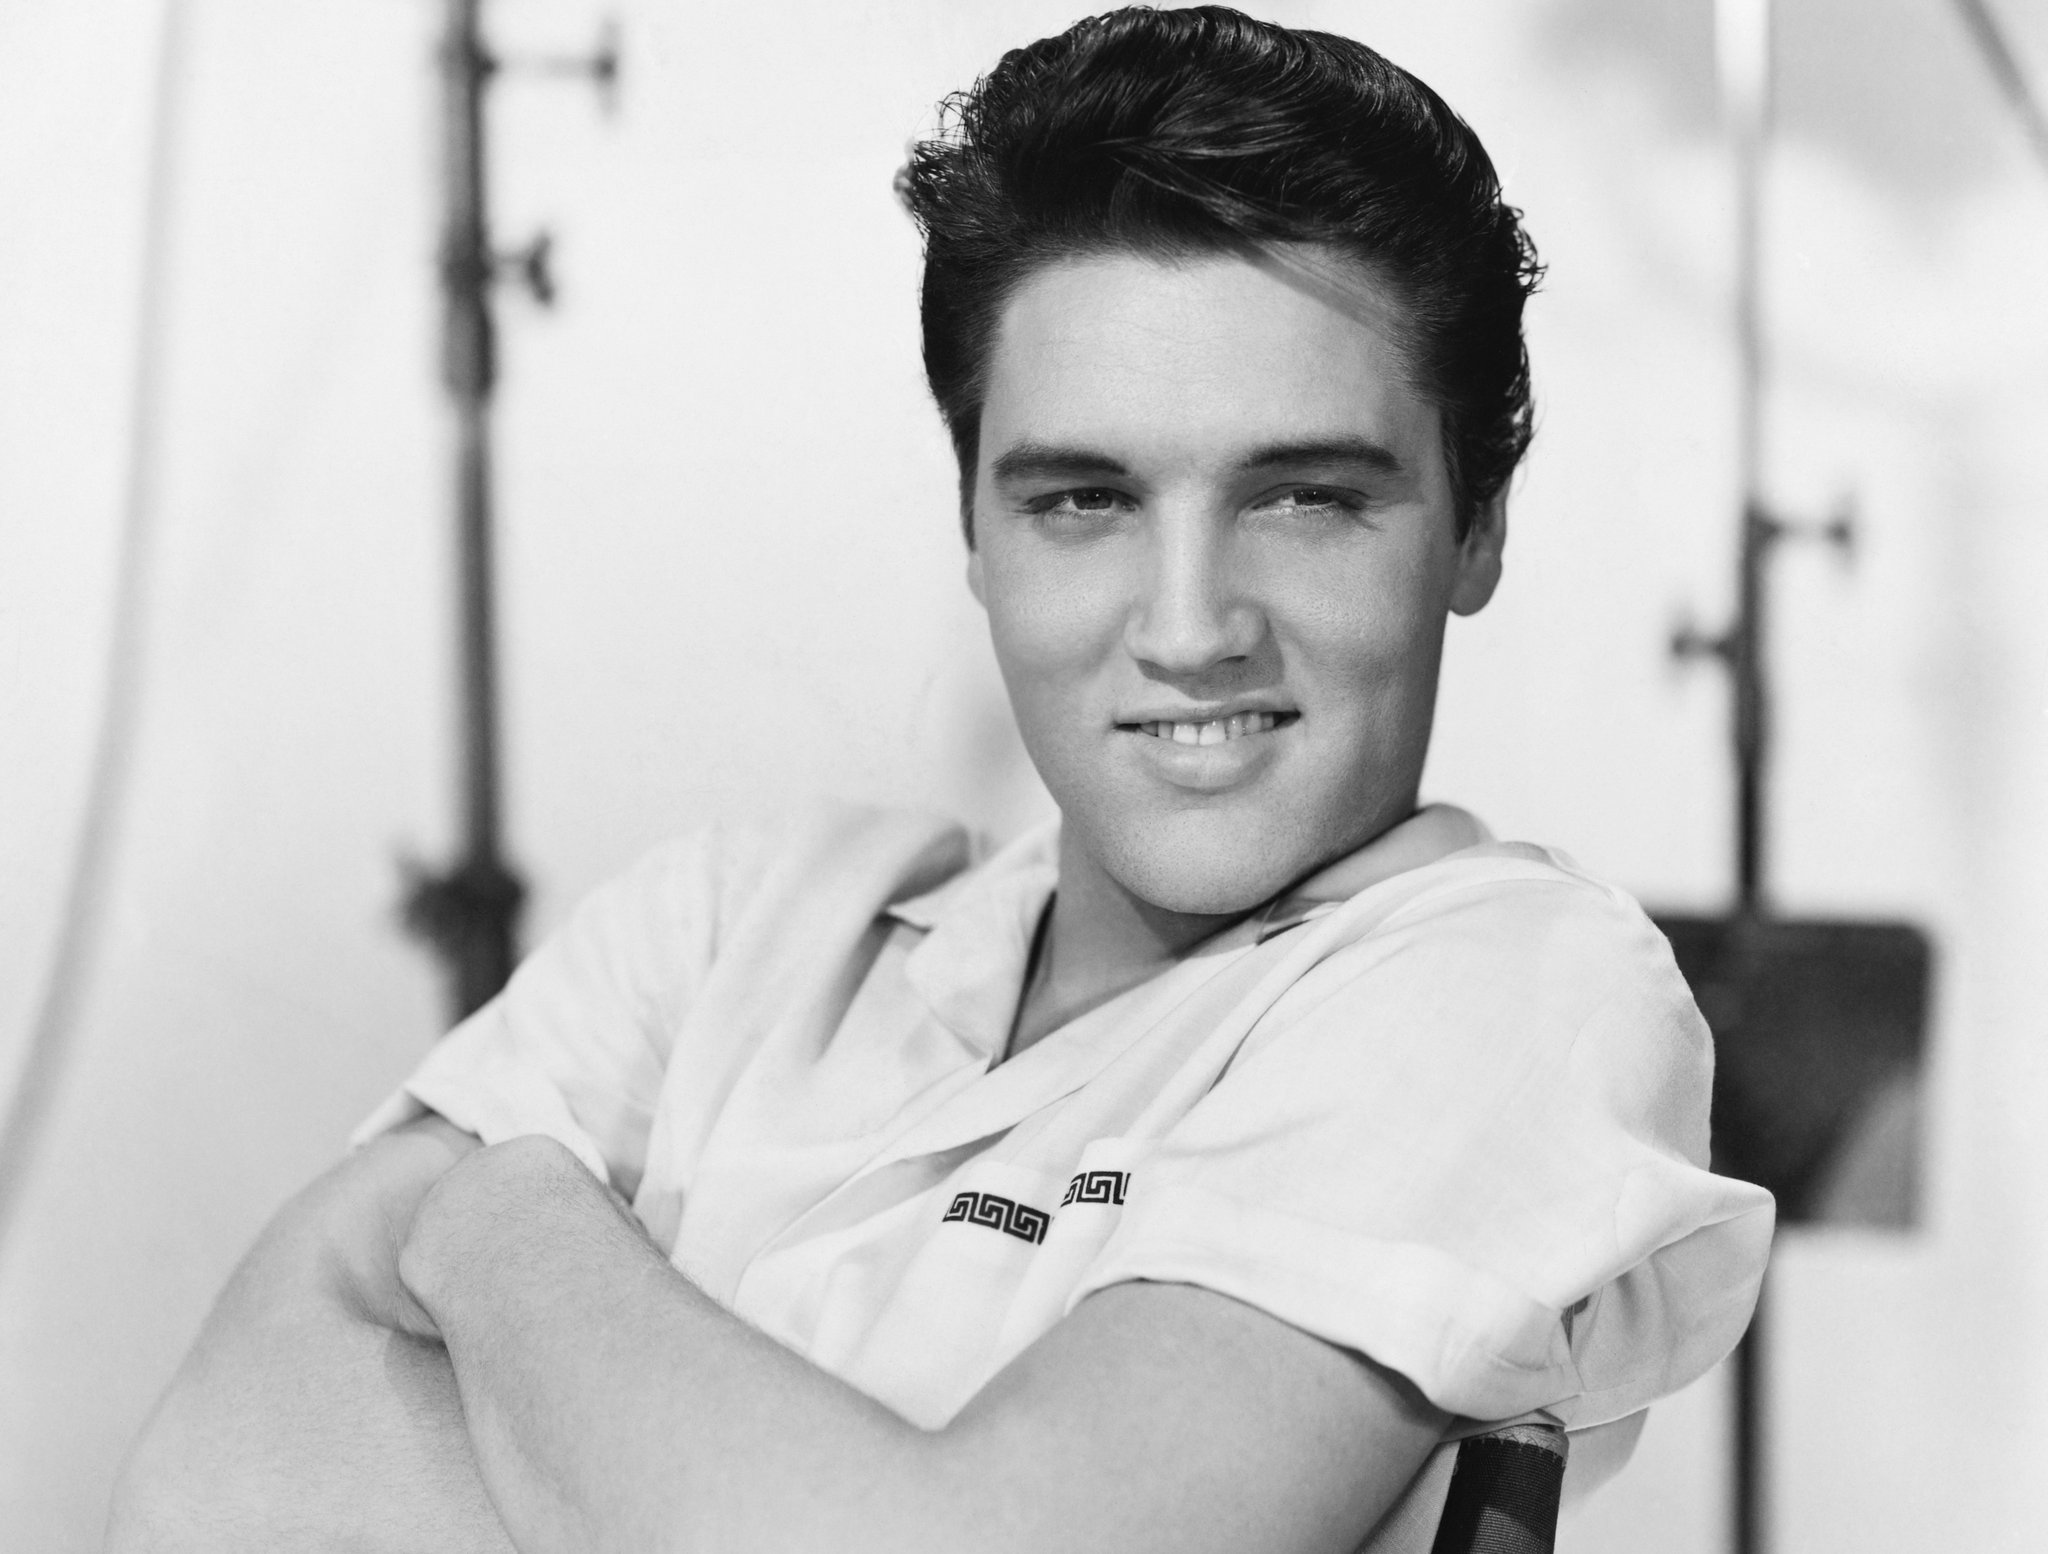 Elvis presely photo